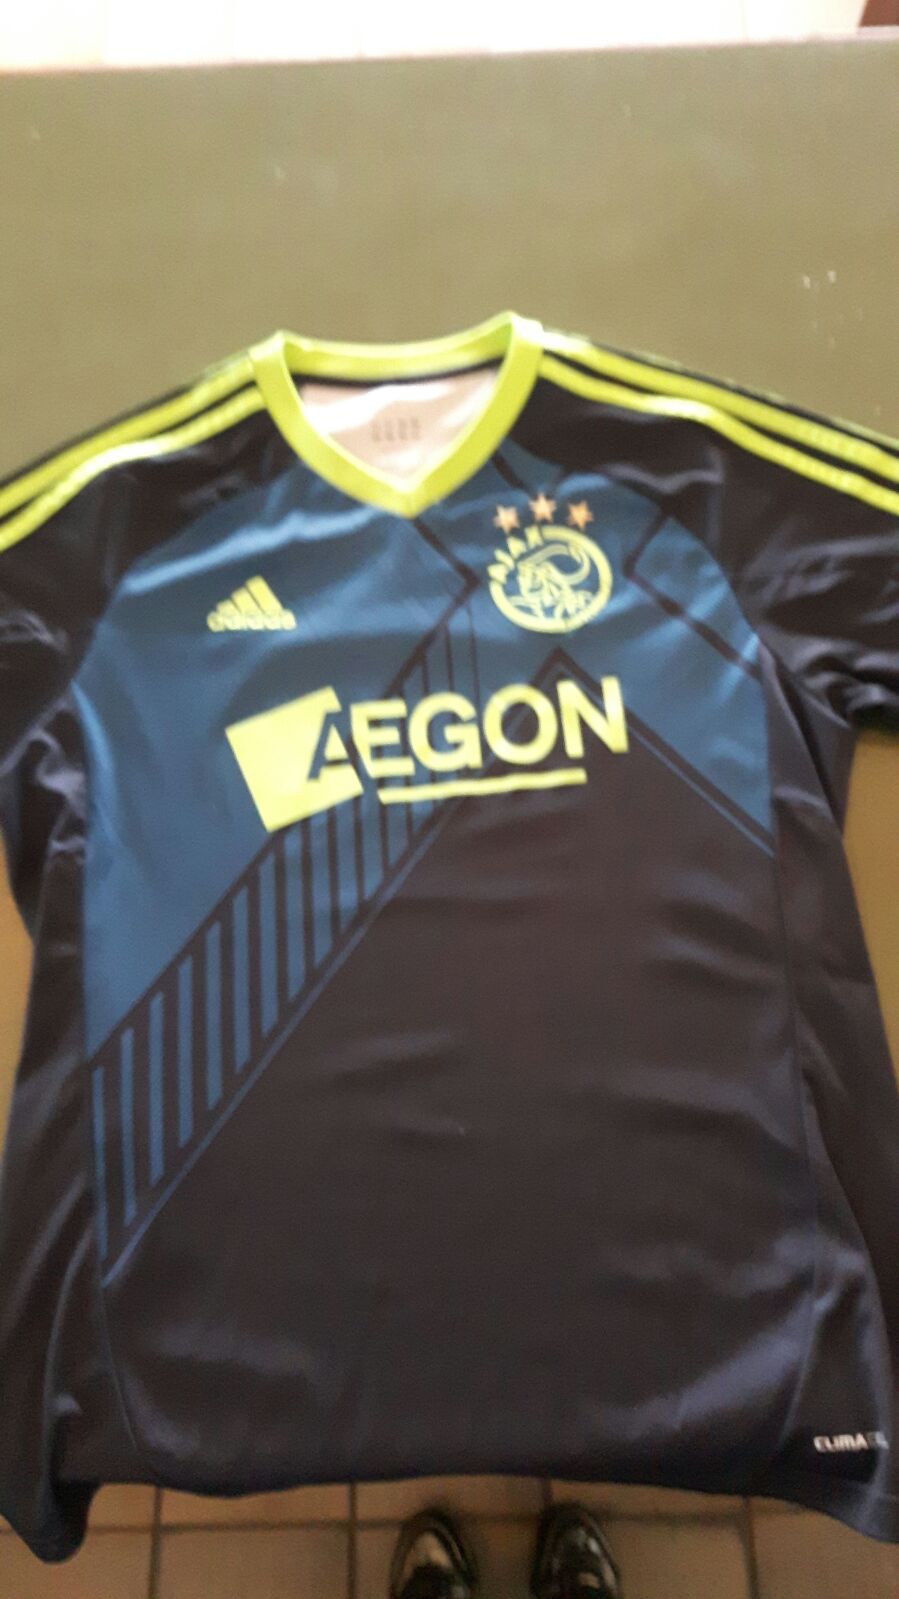 Shuraba vacuüm Stevig Ajax shirt gevonden